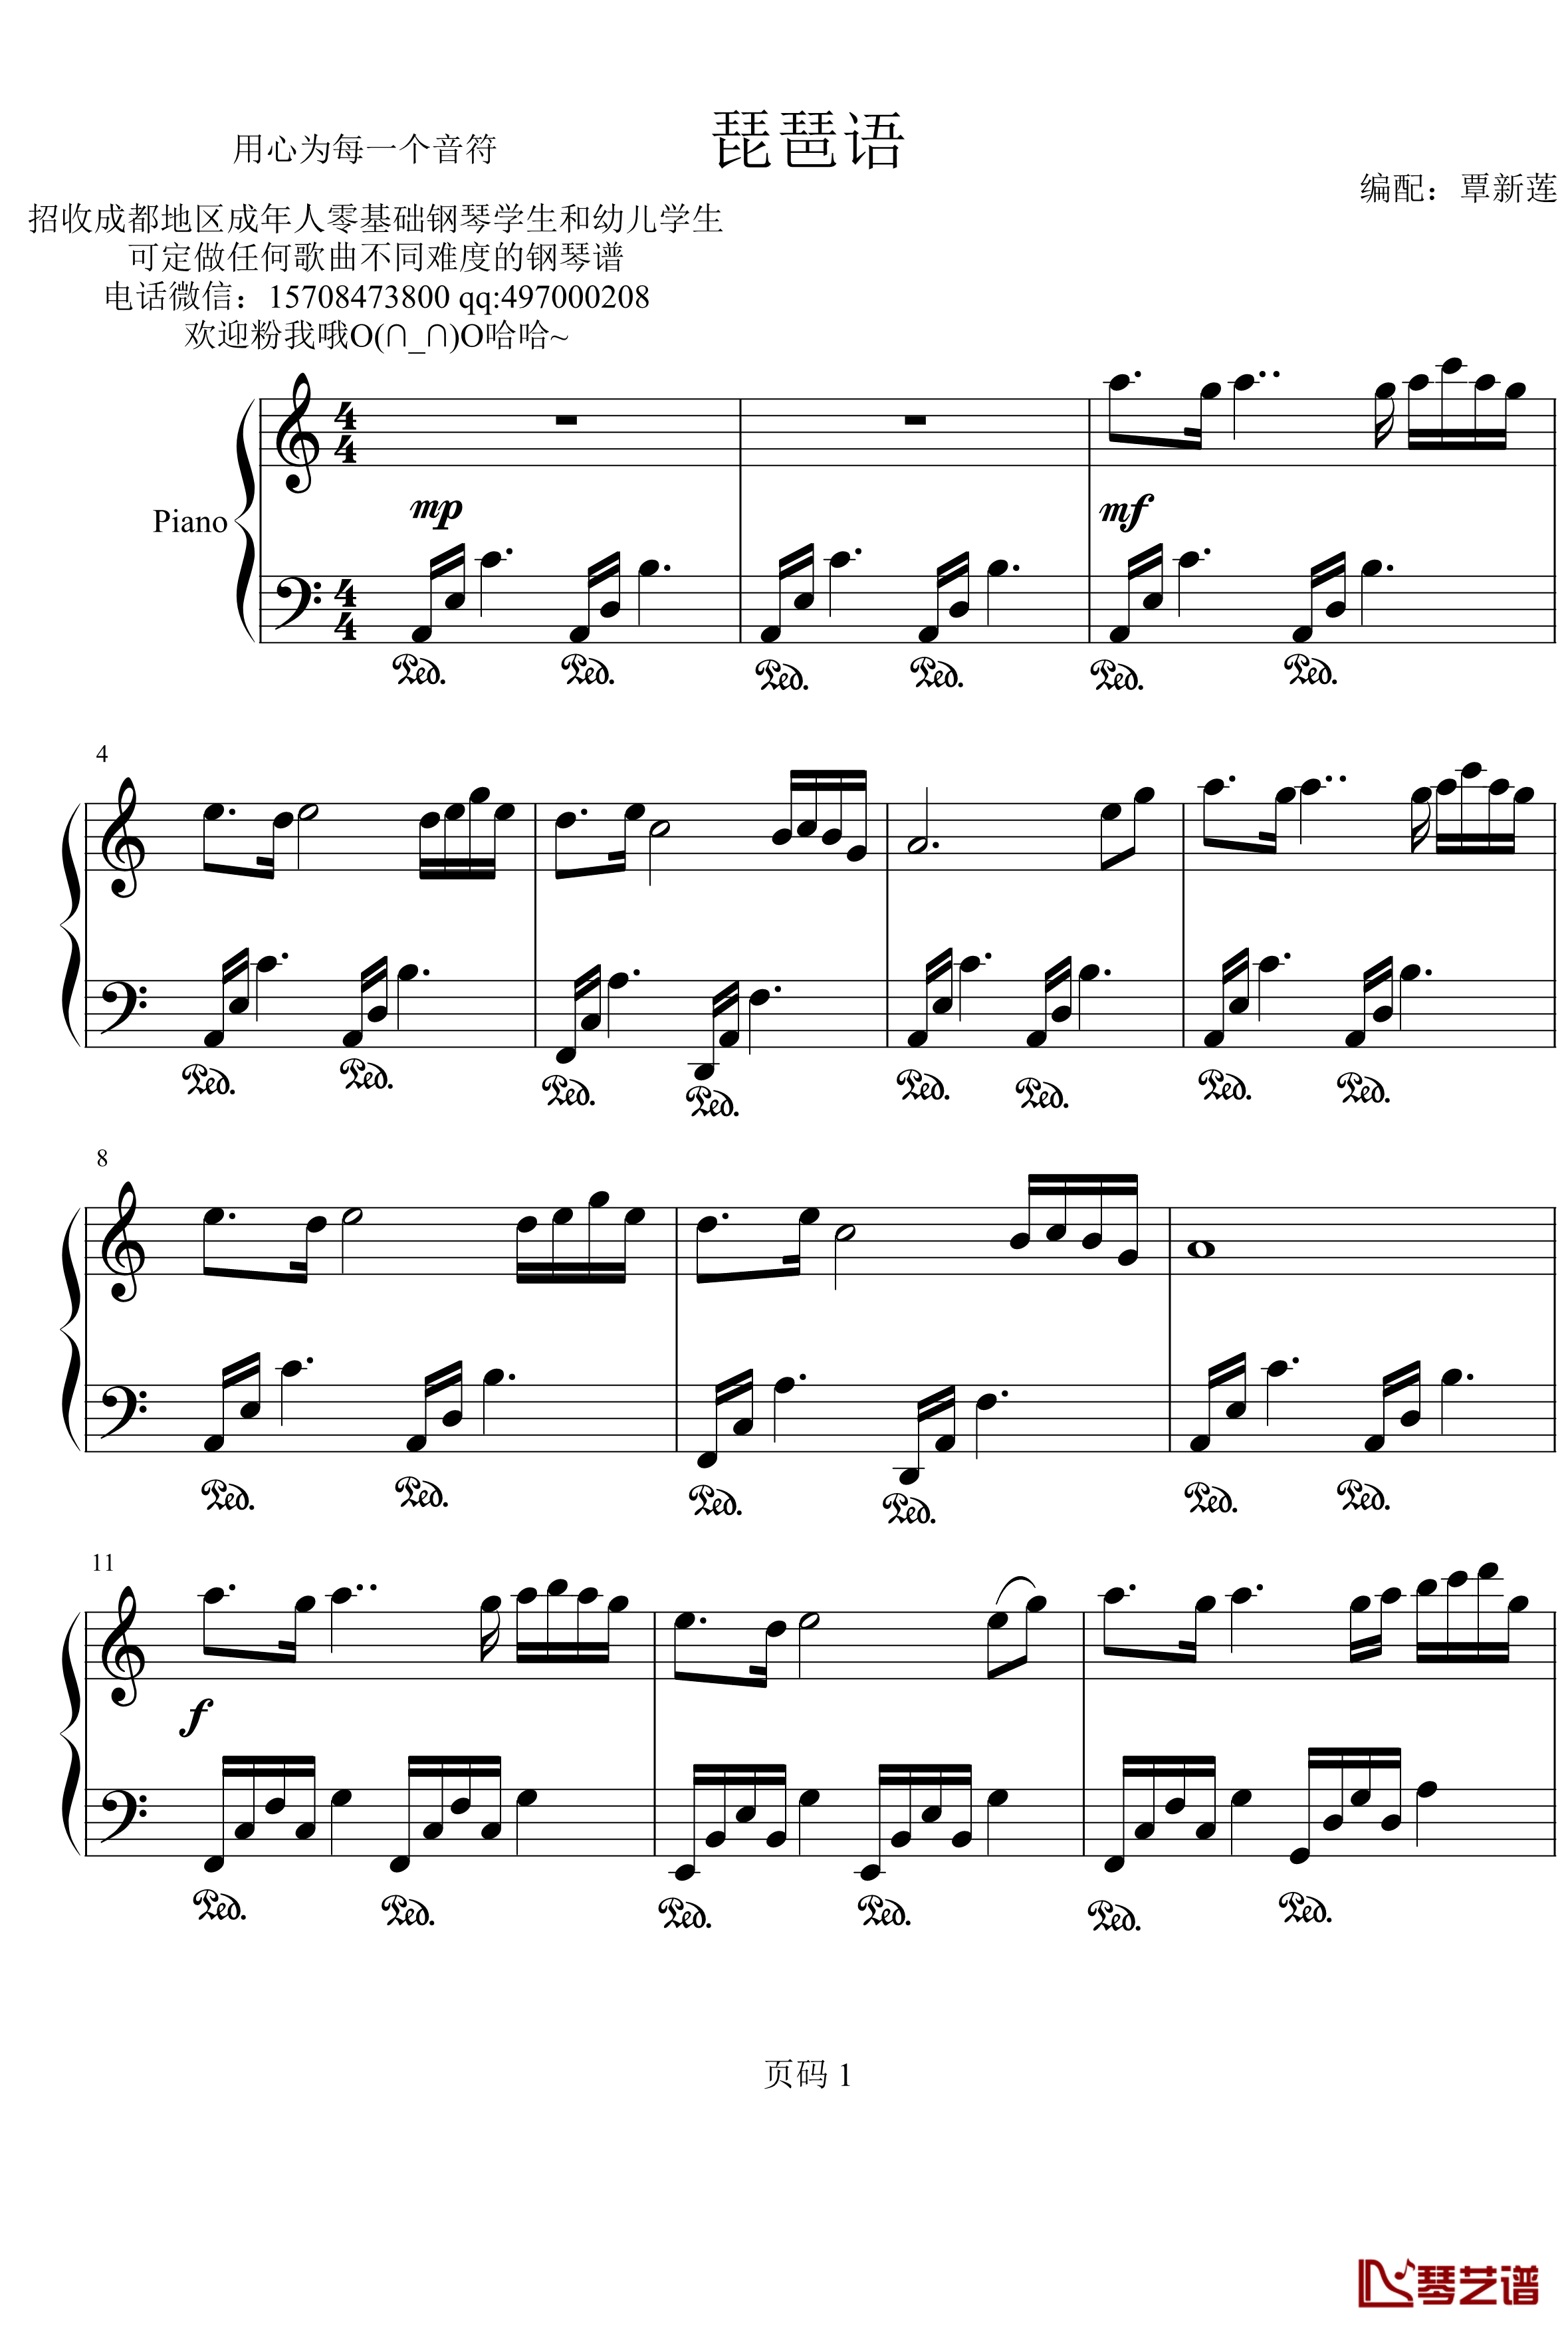 琵琶语钢琴简谱-数字双手-林海-钢琴谱网